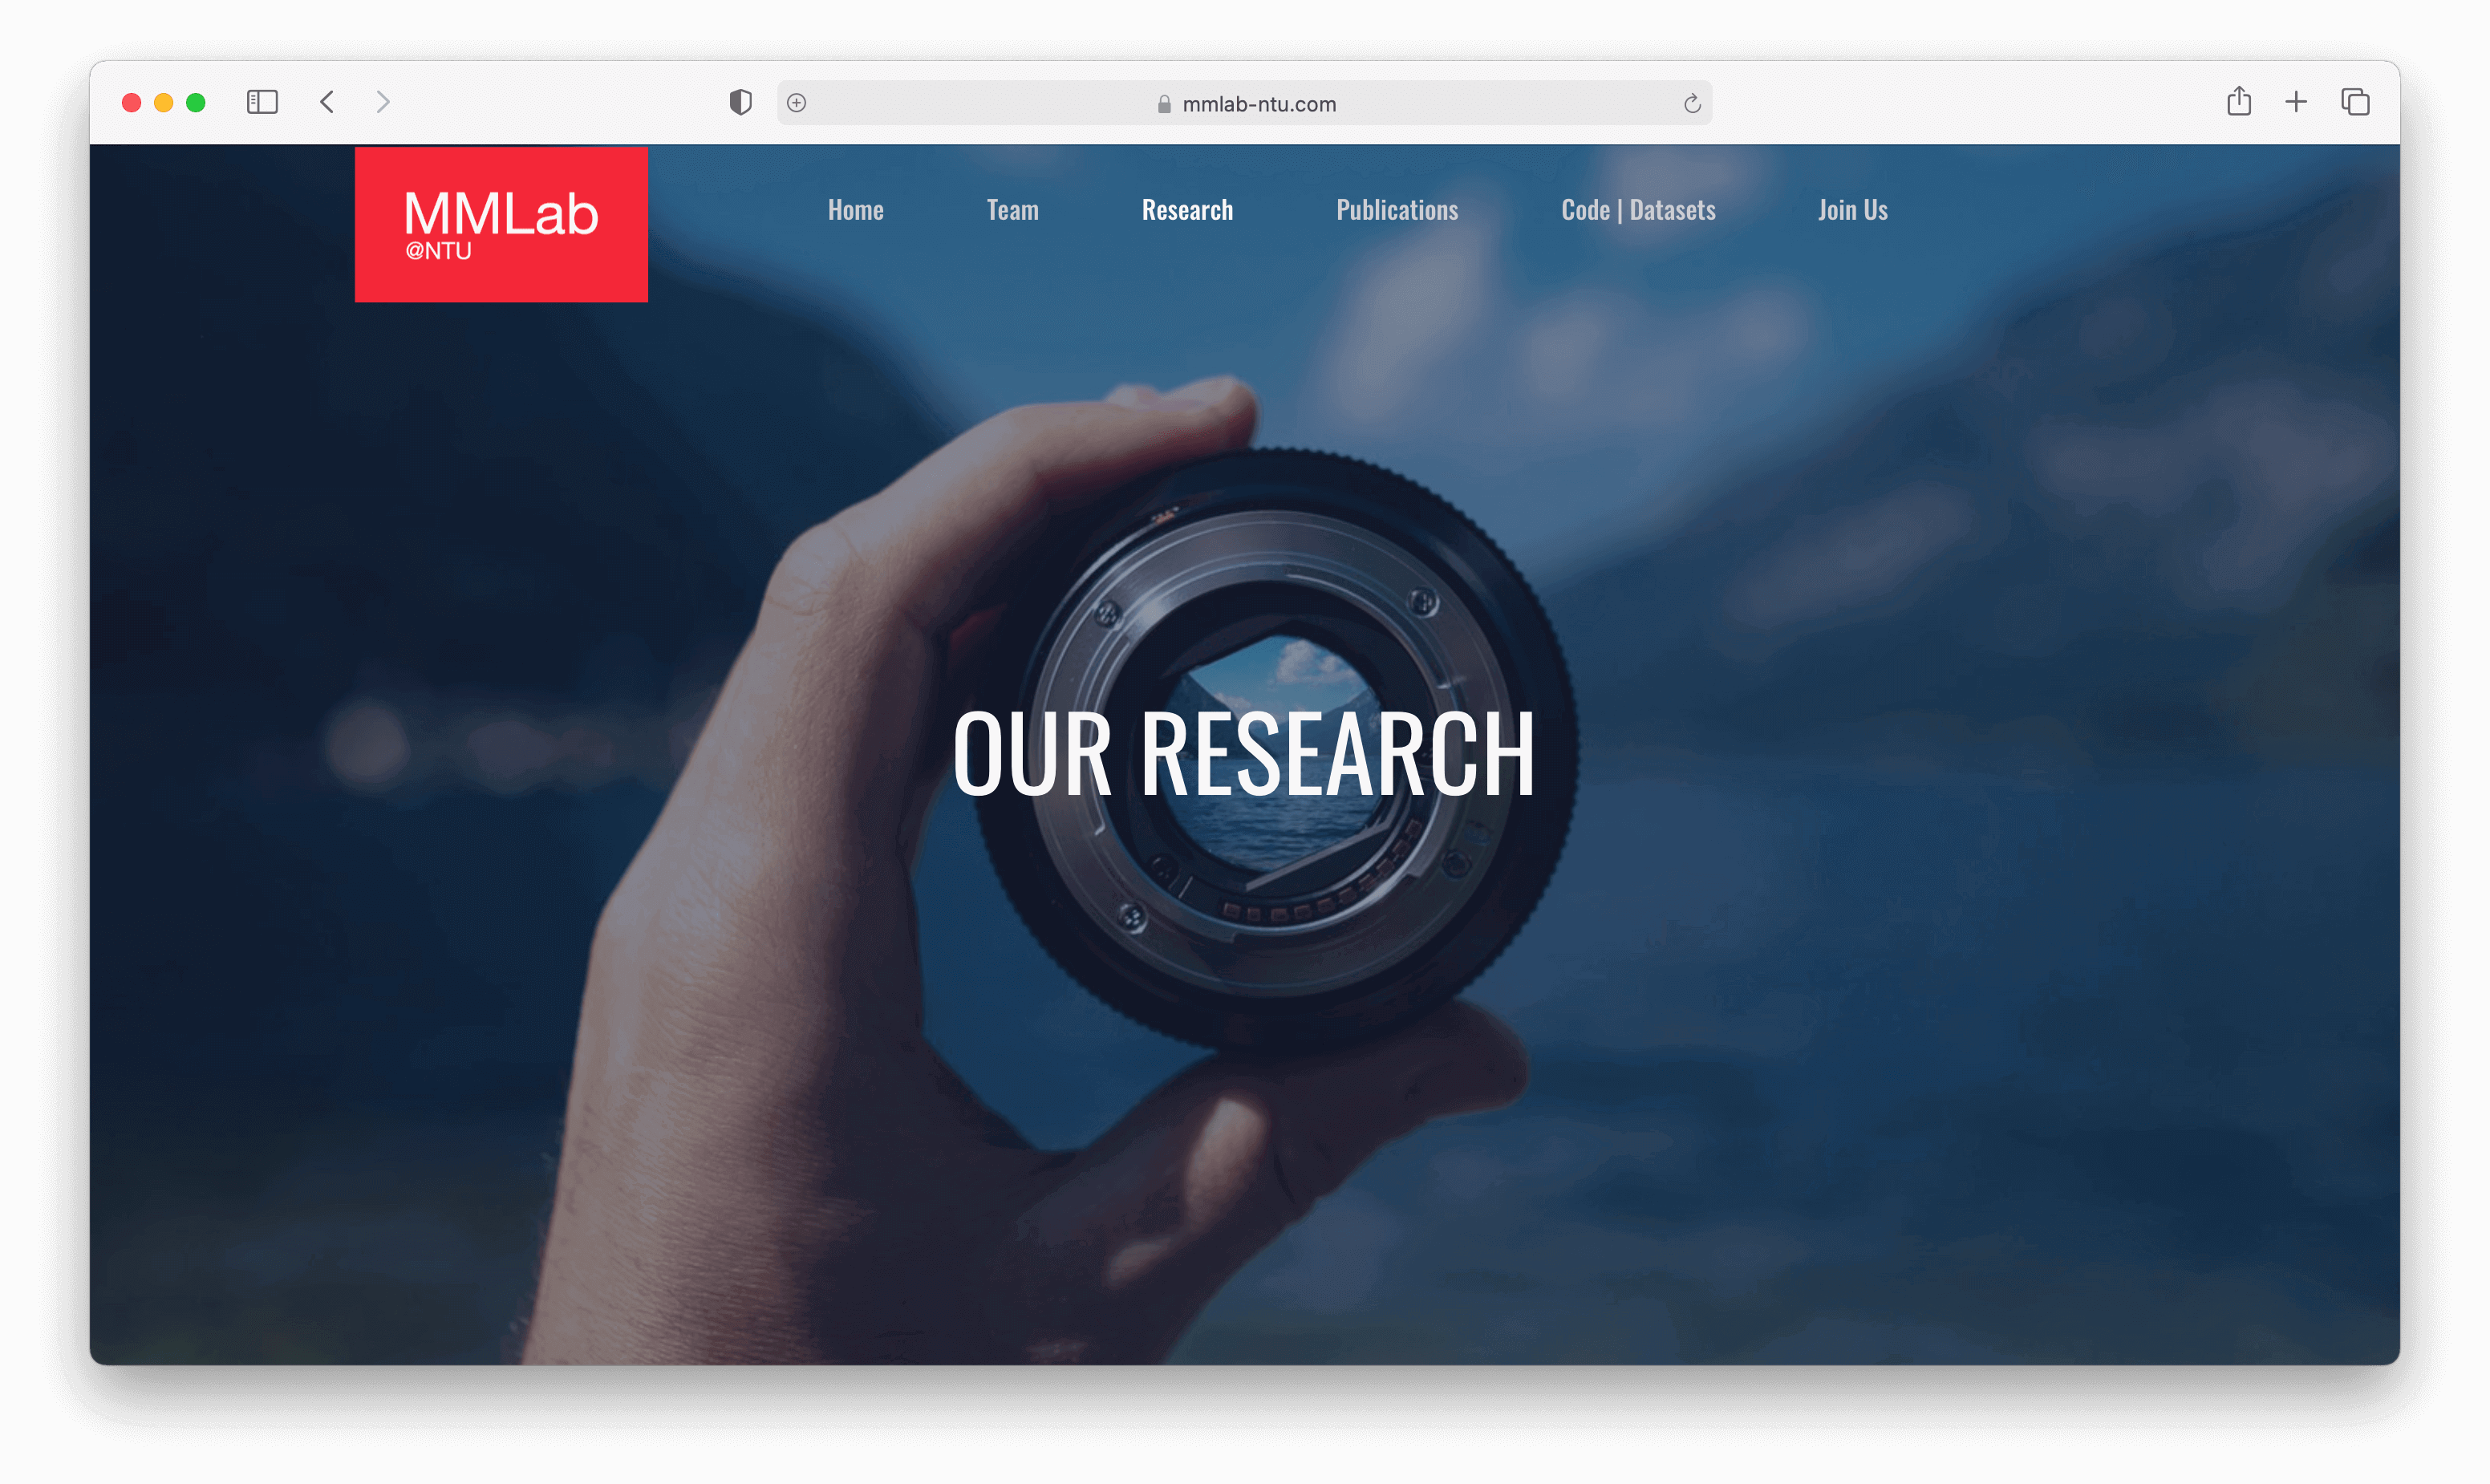 NTU's Research Website